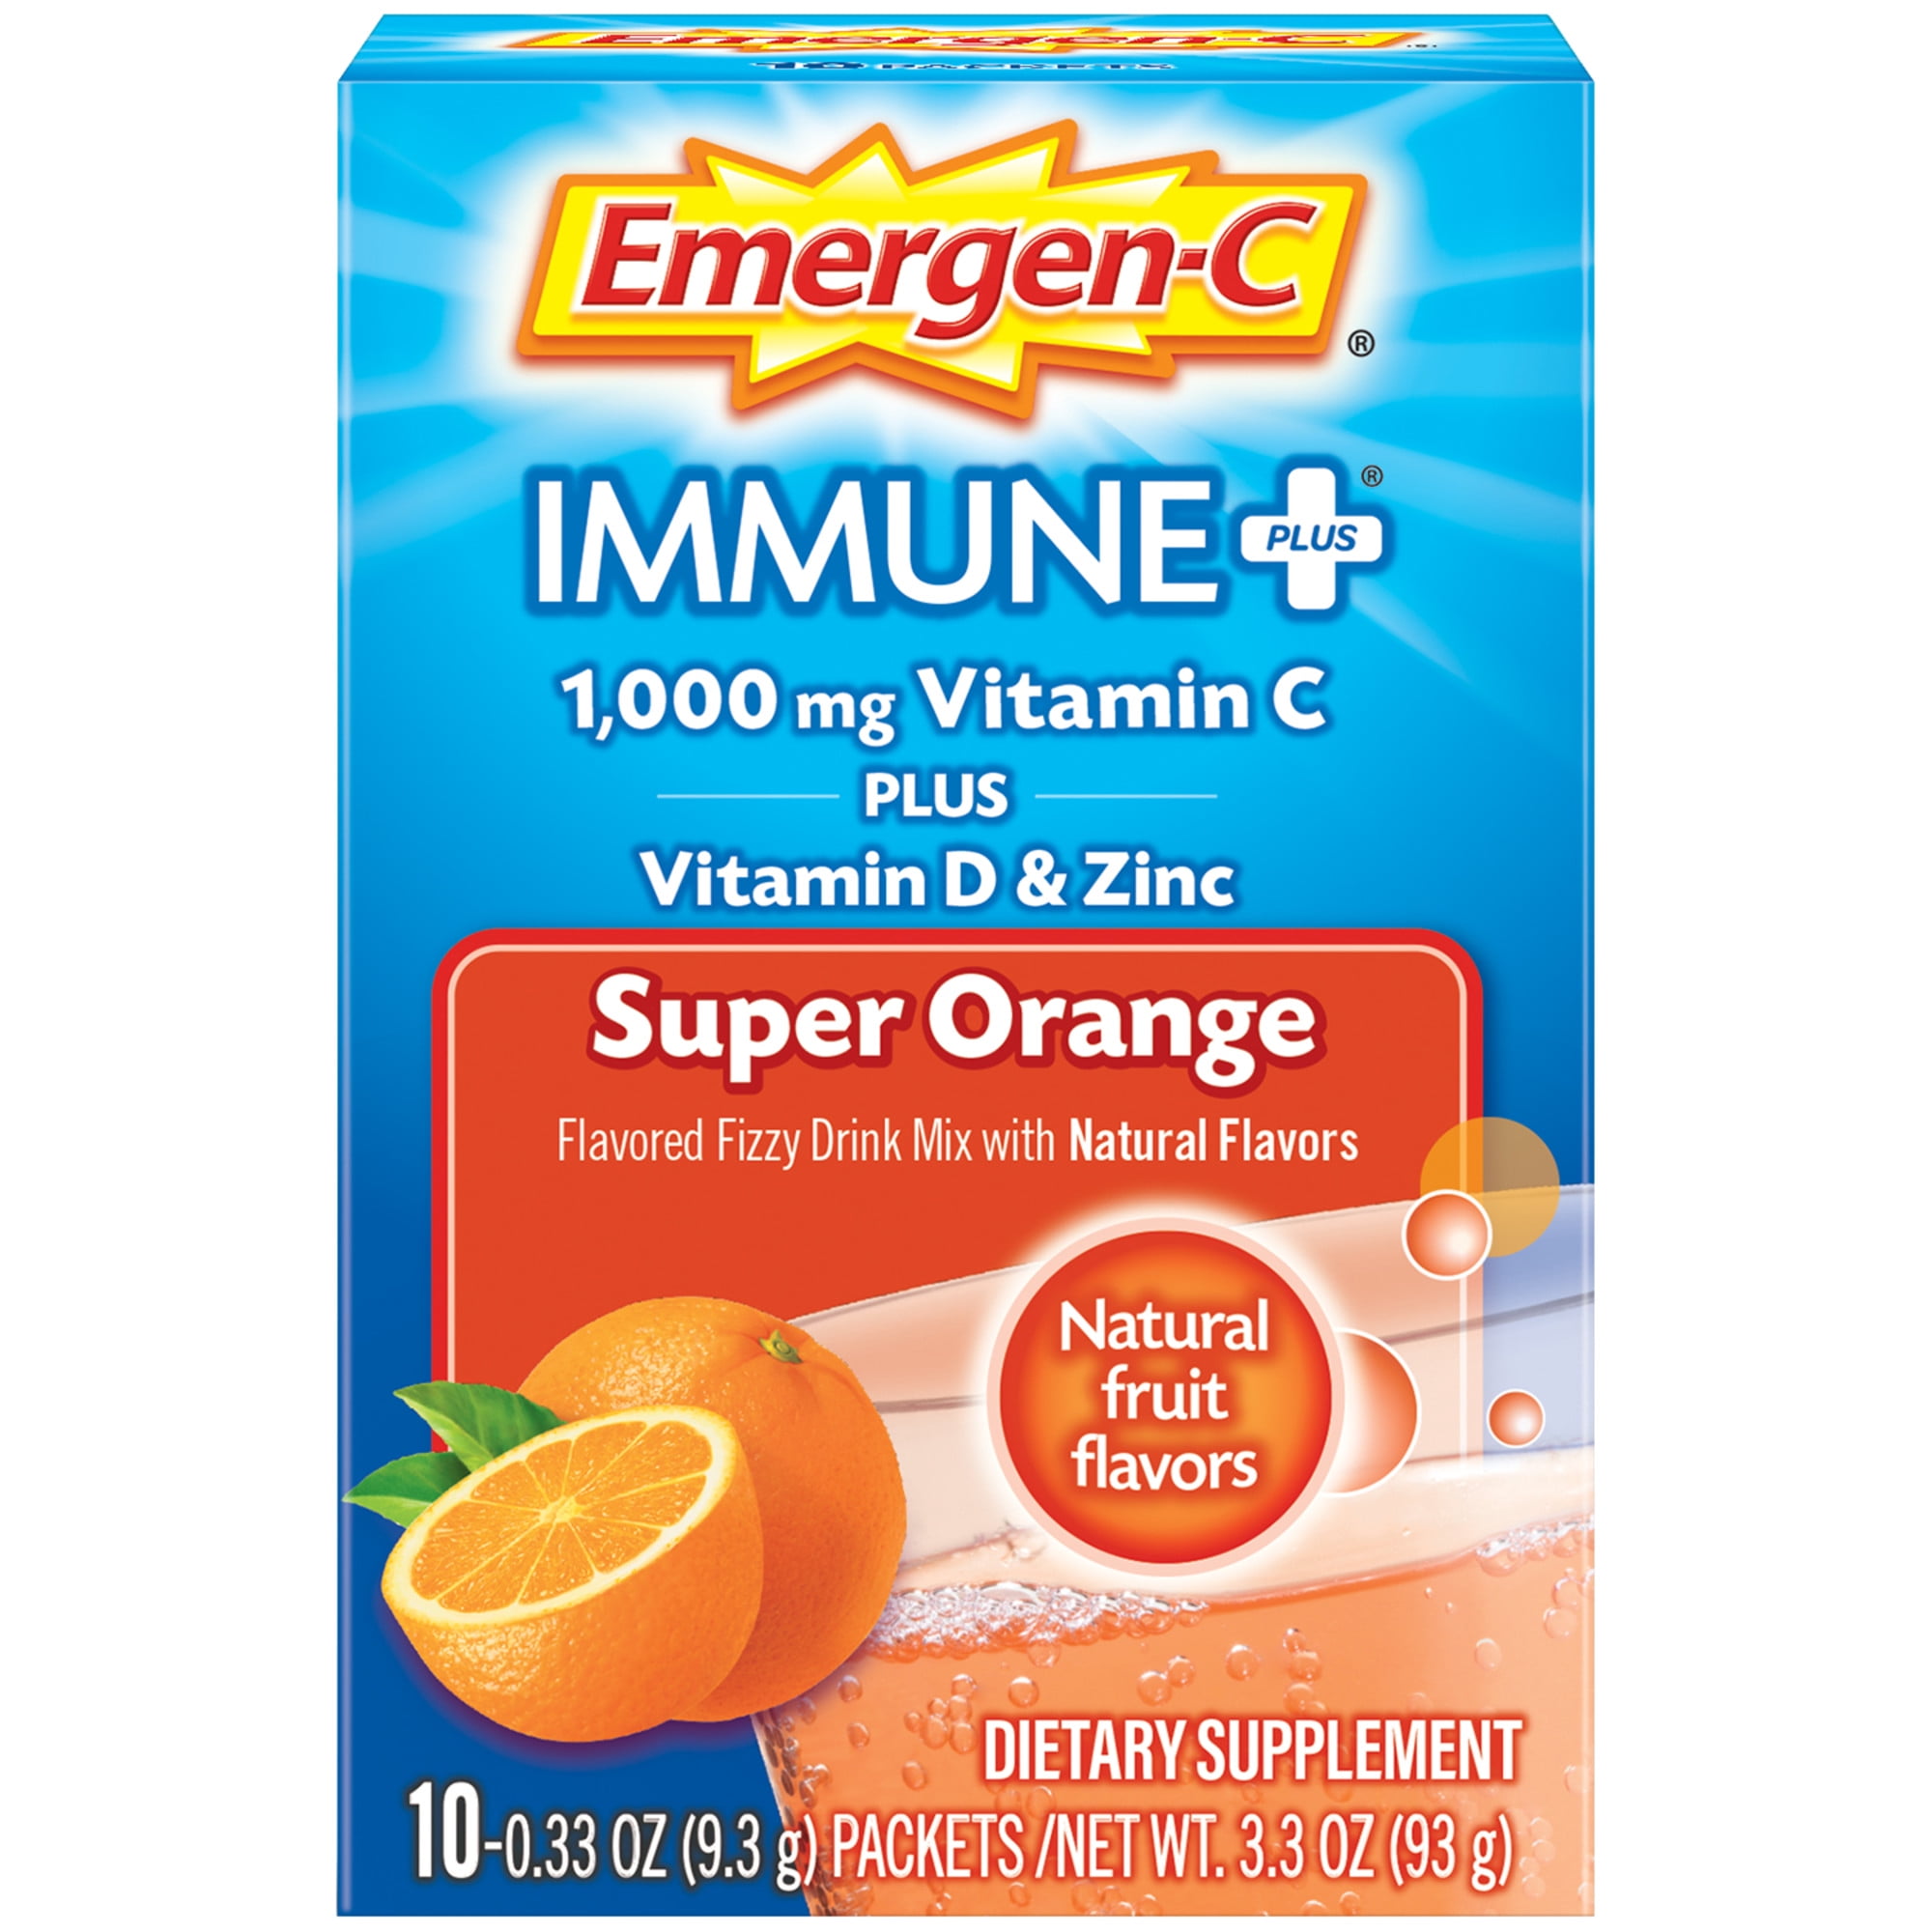 Emergen-C Immune Plus Vitamin C Supplement for Immune Support, Super Orange, 10 Ct